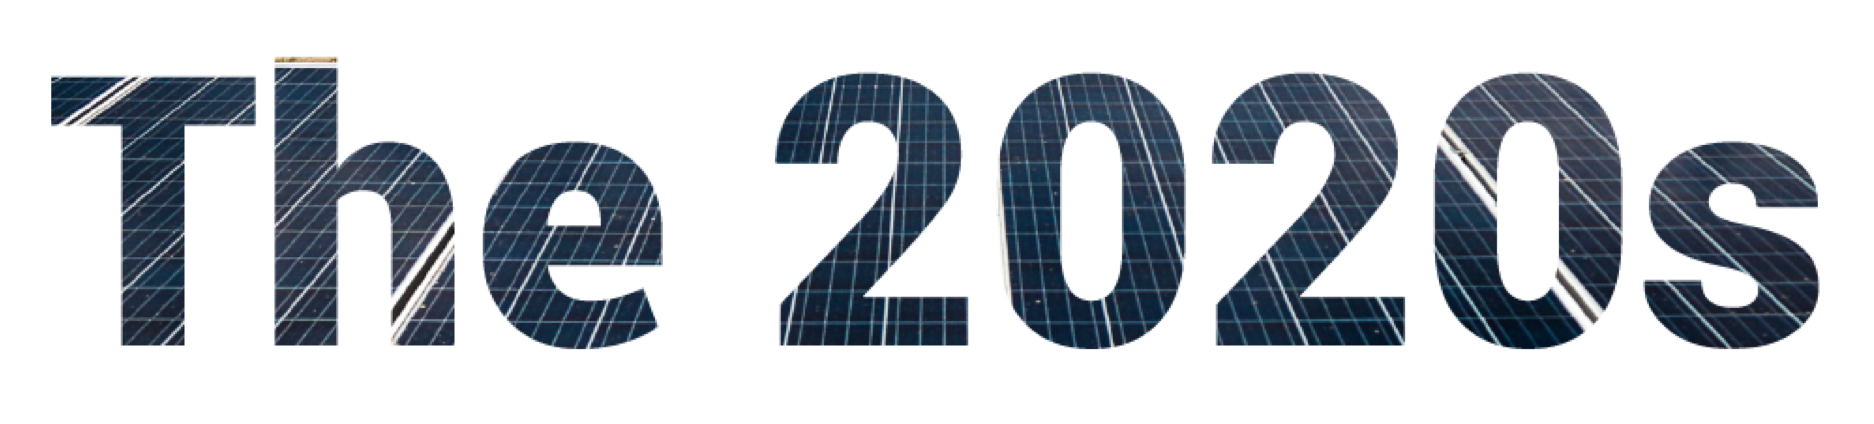 the-solar-energy-decade